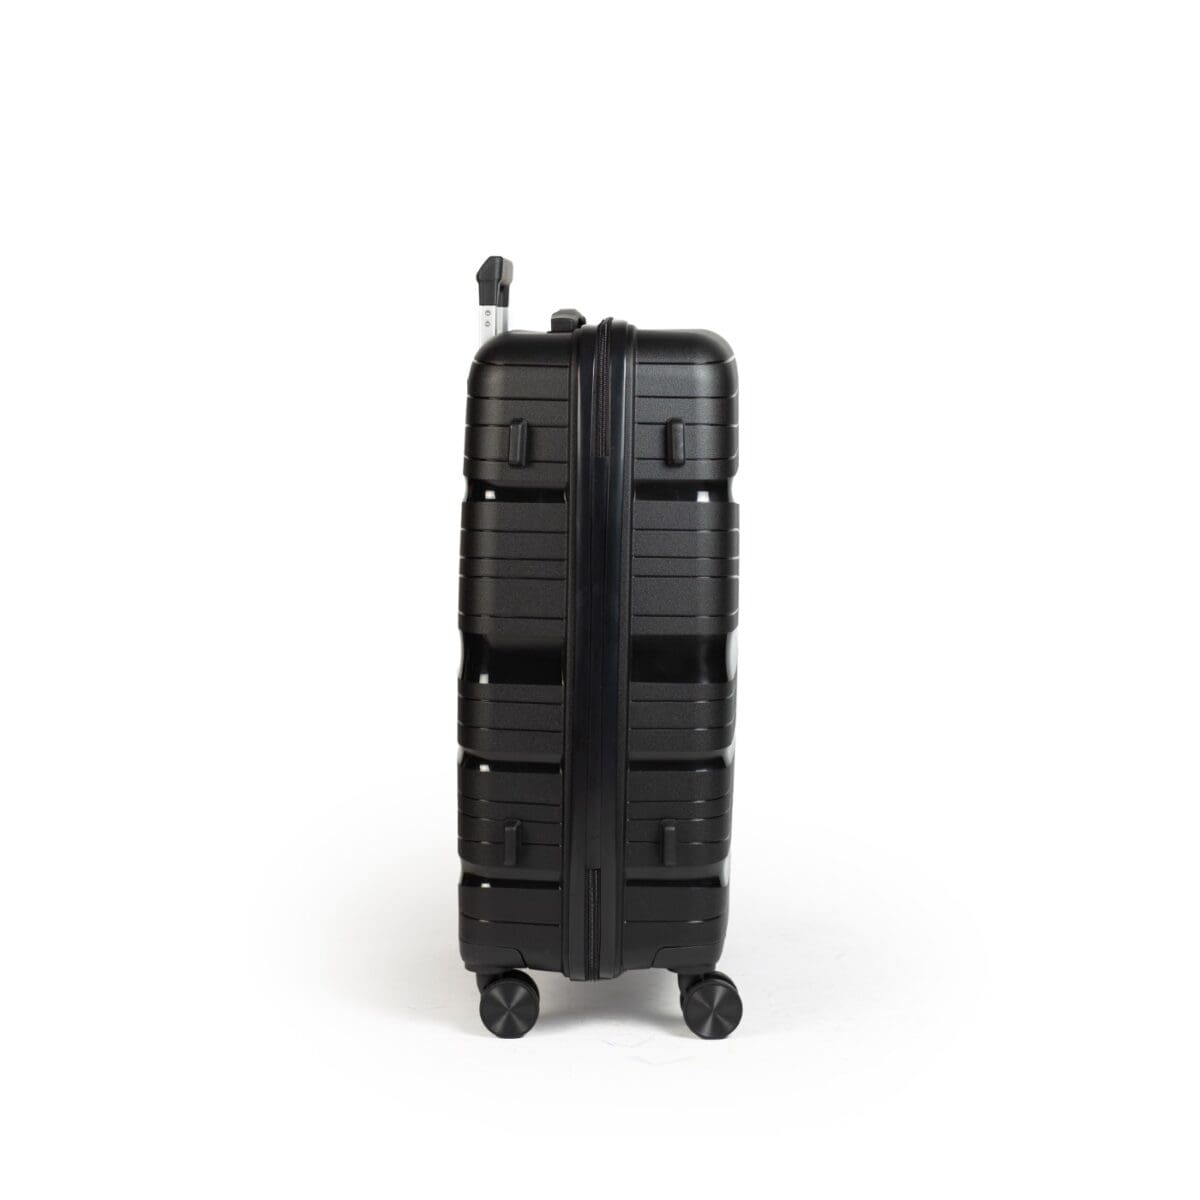 Δεξιά πλευρά βαλίτσας με πατόκουμπα σε μαύρο χρώμα